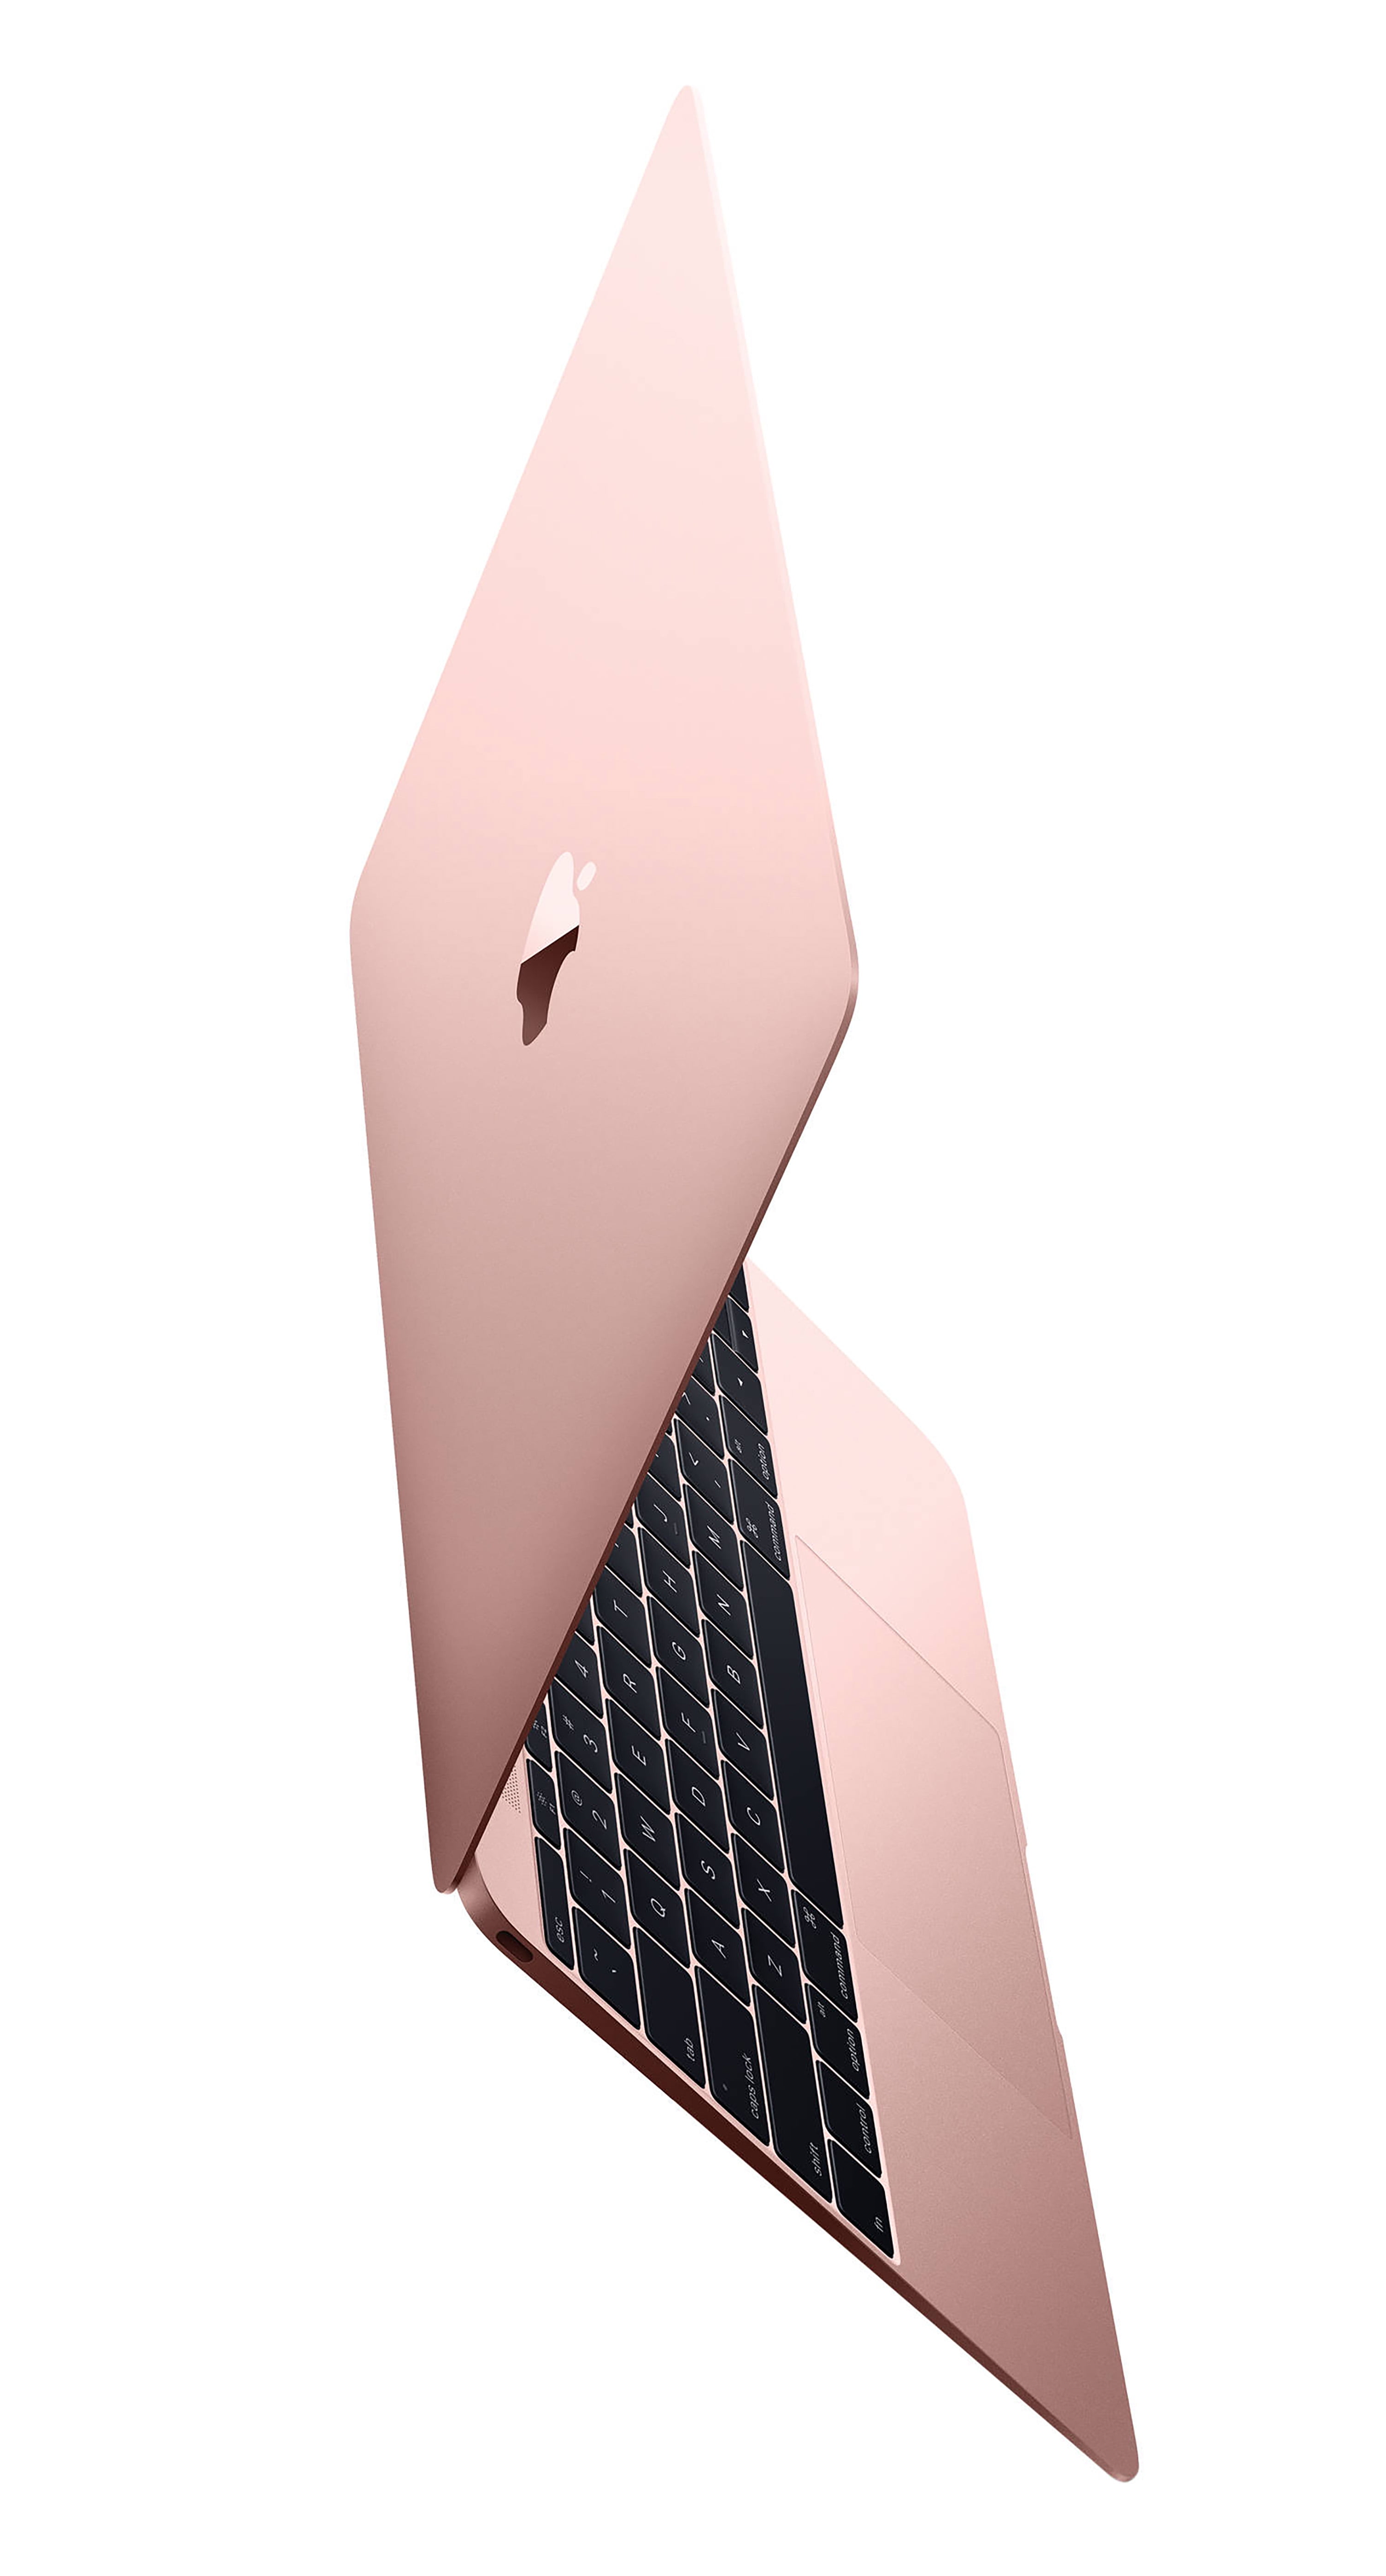 MacBook 12インチ Early2016 MMGL2J/A ローズゴールド